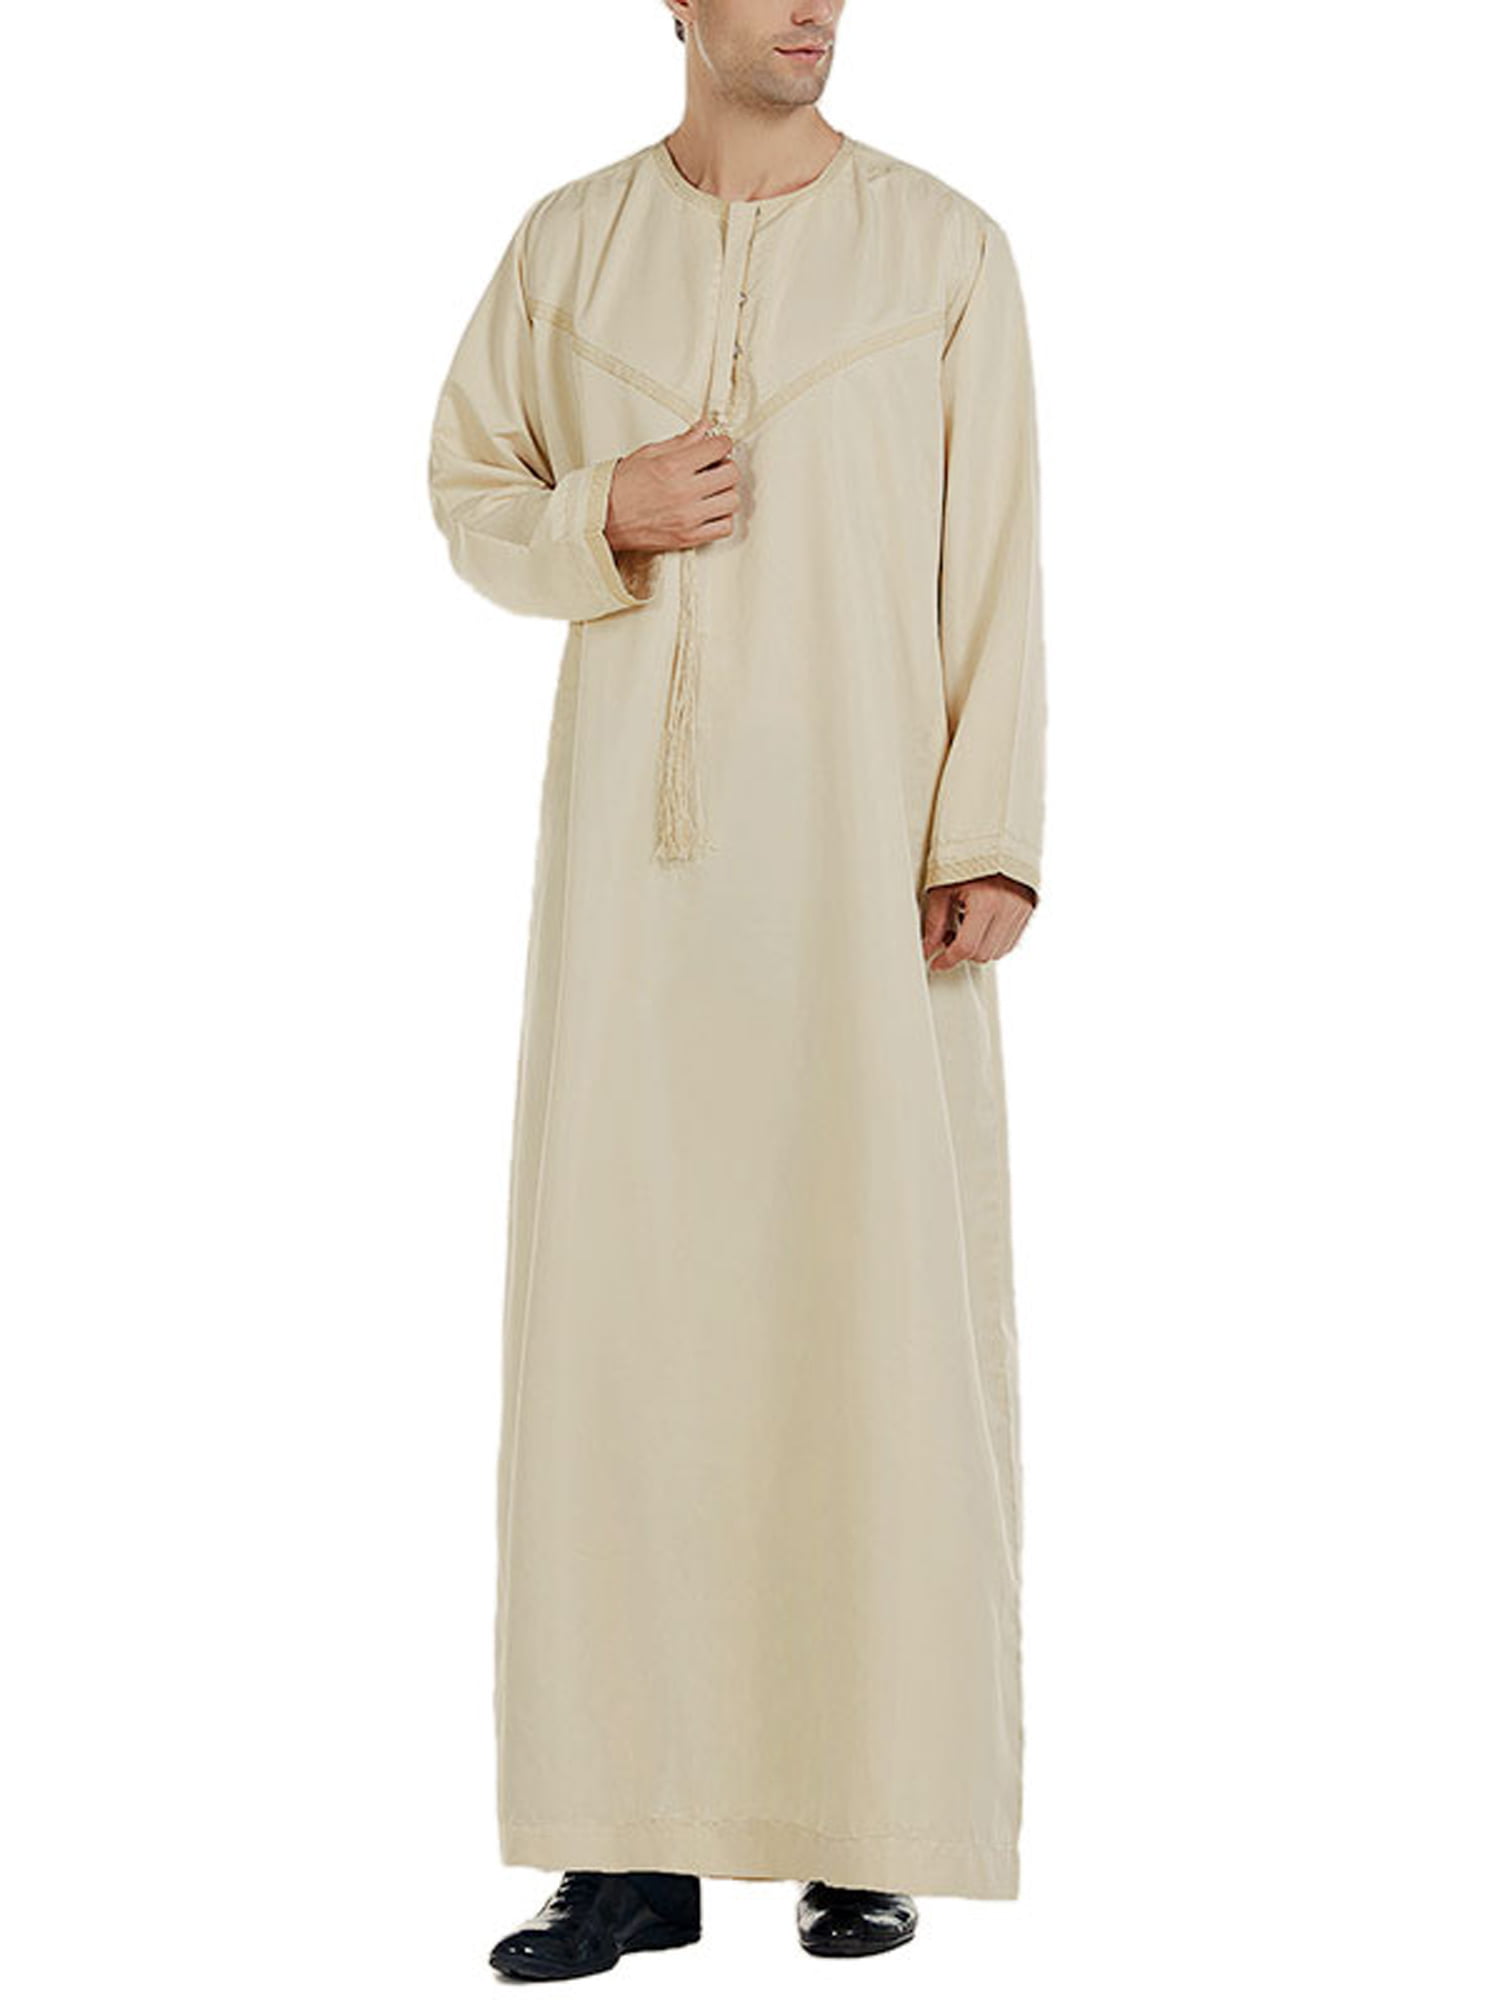 UK Men Muslim Jubba Kaftan Thobe Arab Robe Full Length Formal T Shirt Top Tunic